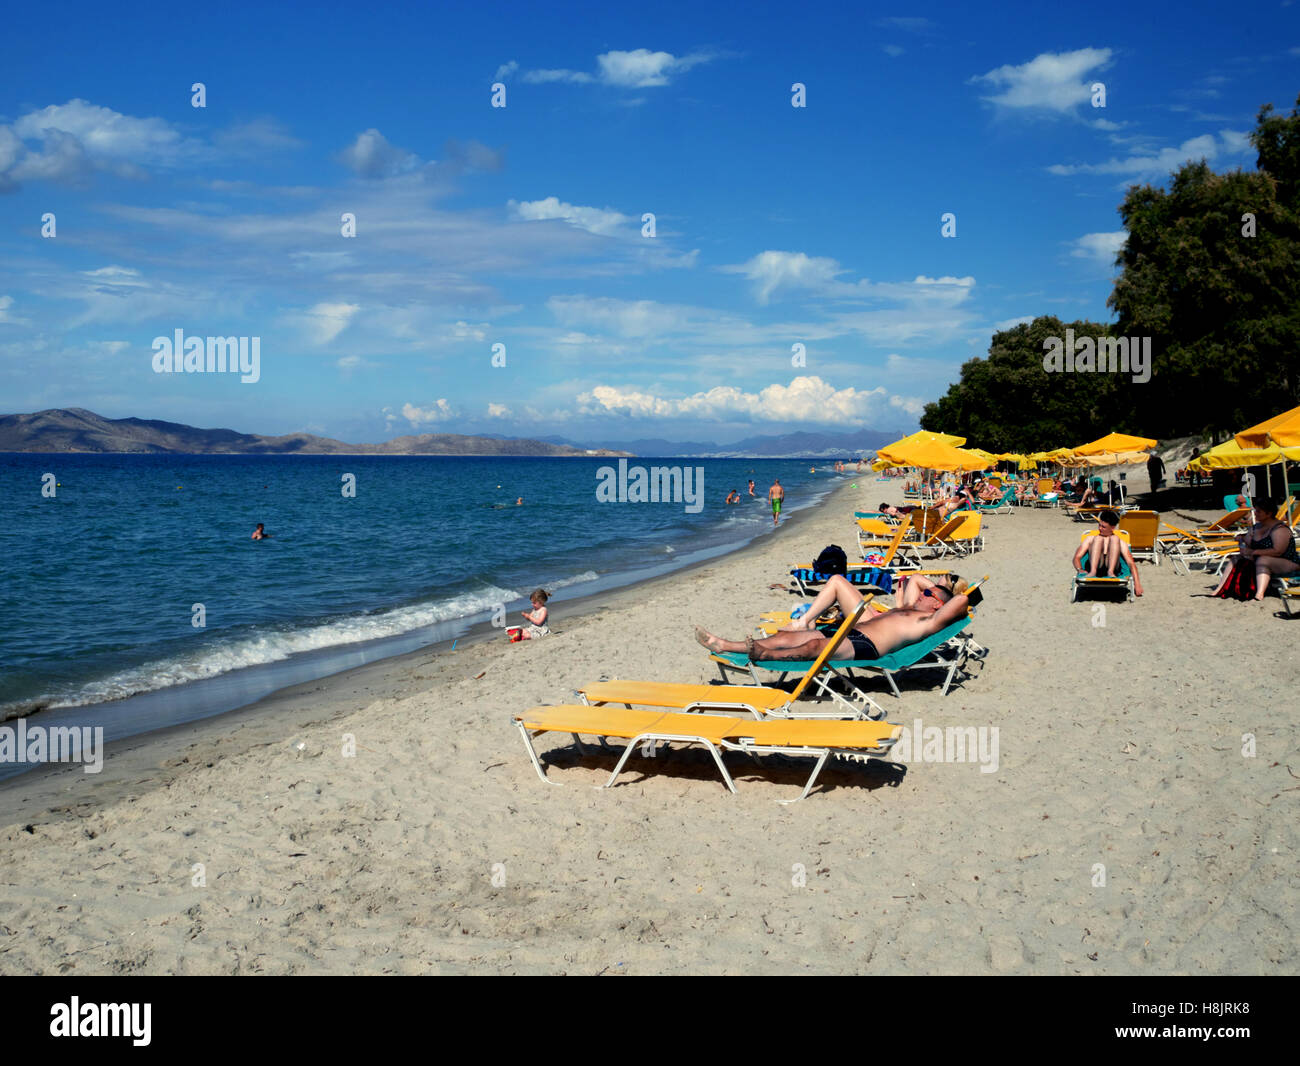 Limnara beach, Marmari, Kos, Greece.  Views across the Aegean to Pserimos and Bodrum. Stock Photo